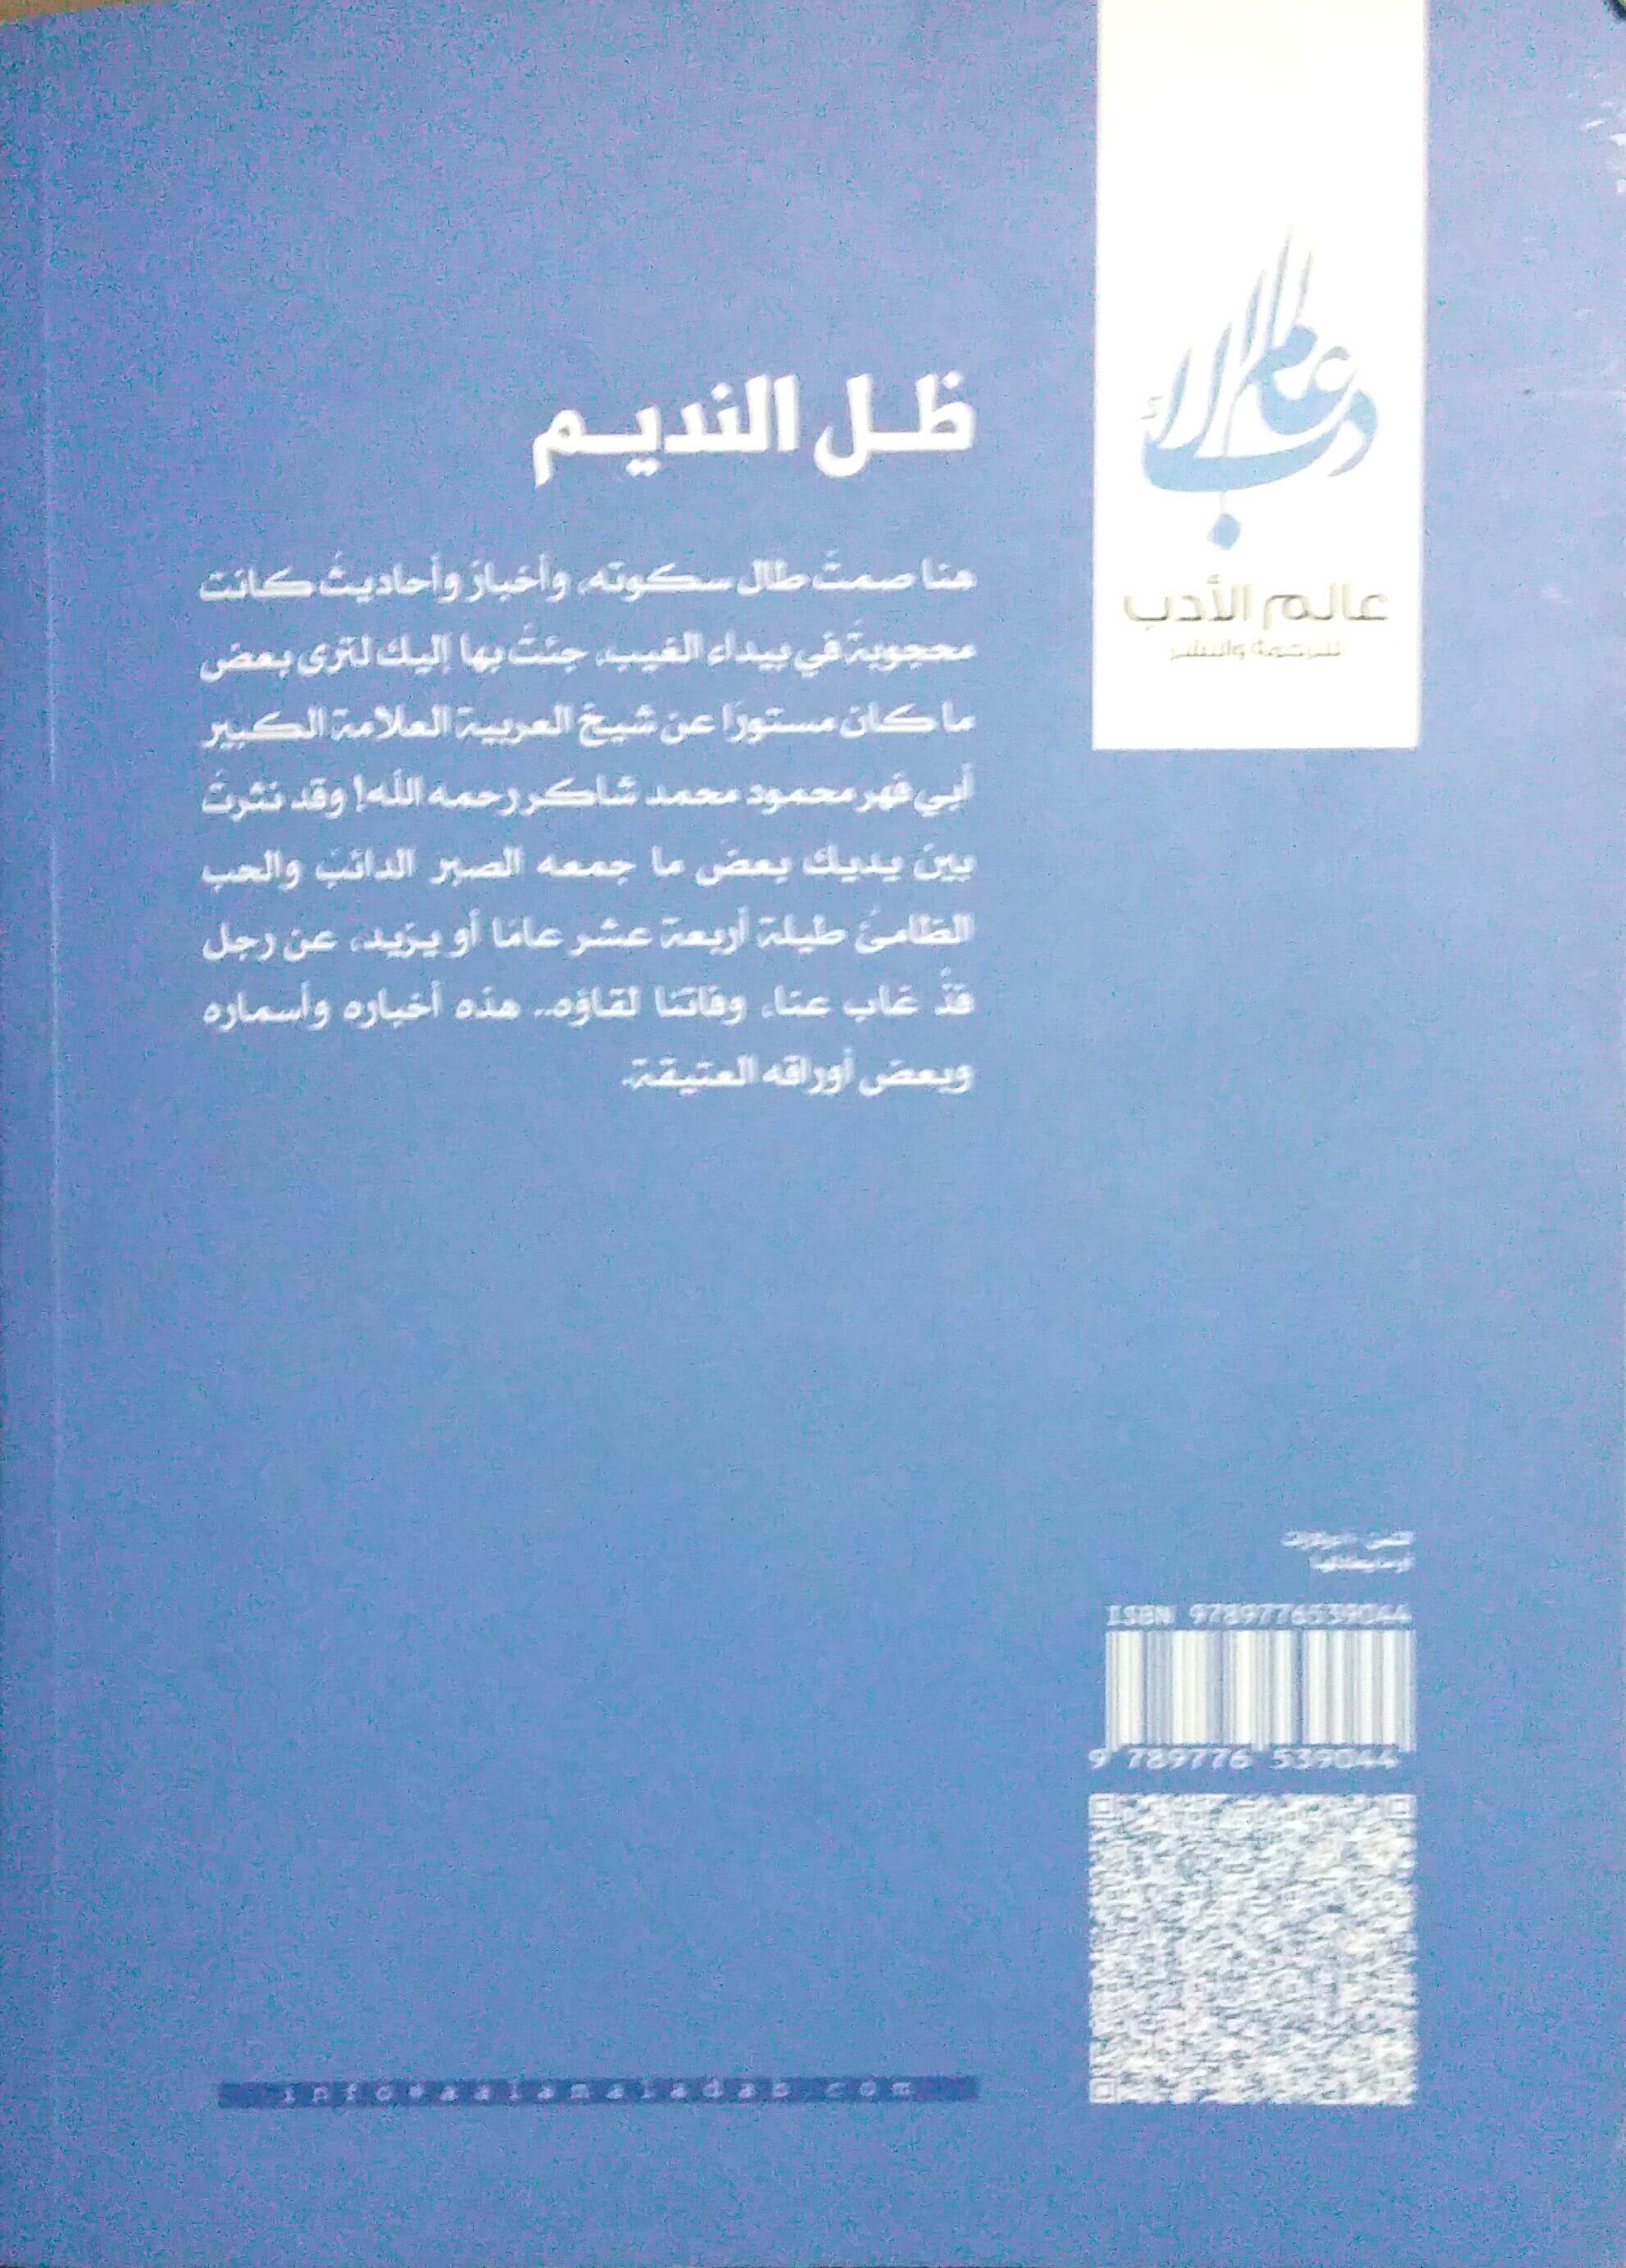 تحميل كتاب ظل النديم PDF تأليف وجدان العلي في سيرة الشيخ محمود محمد شاكر 6